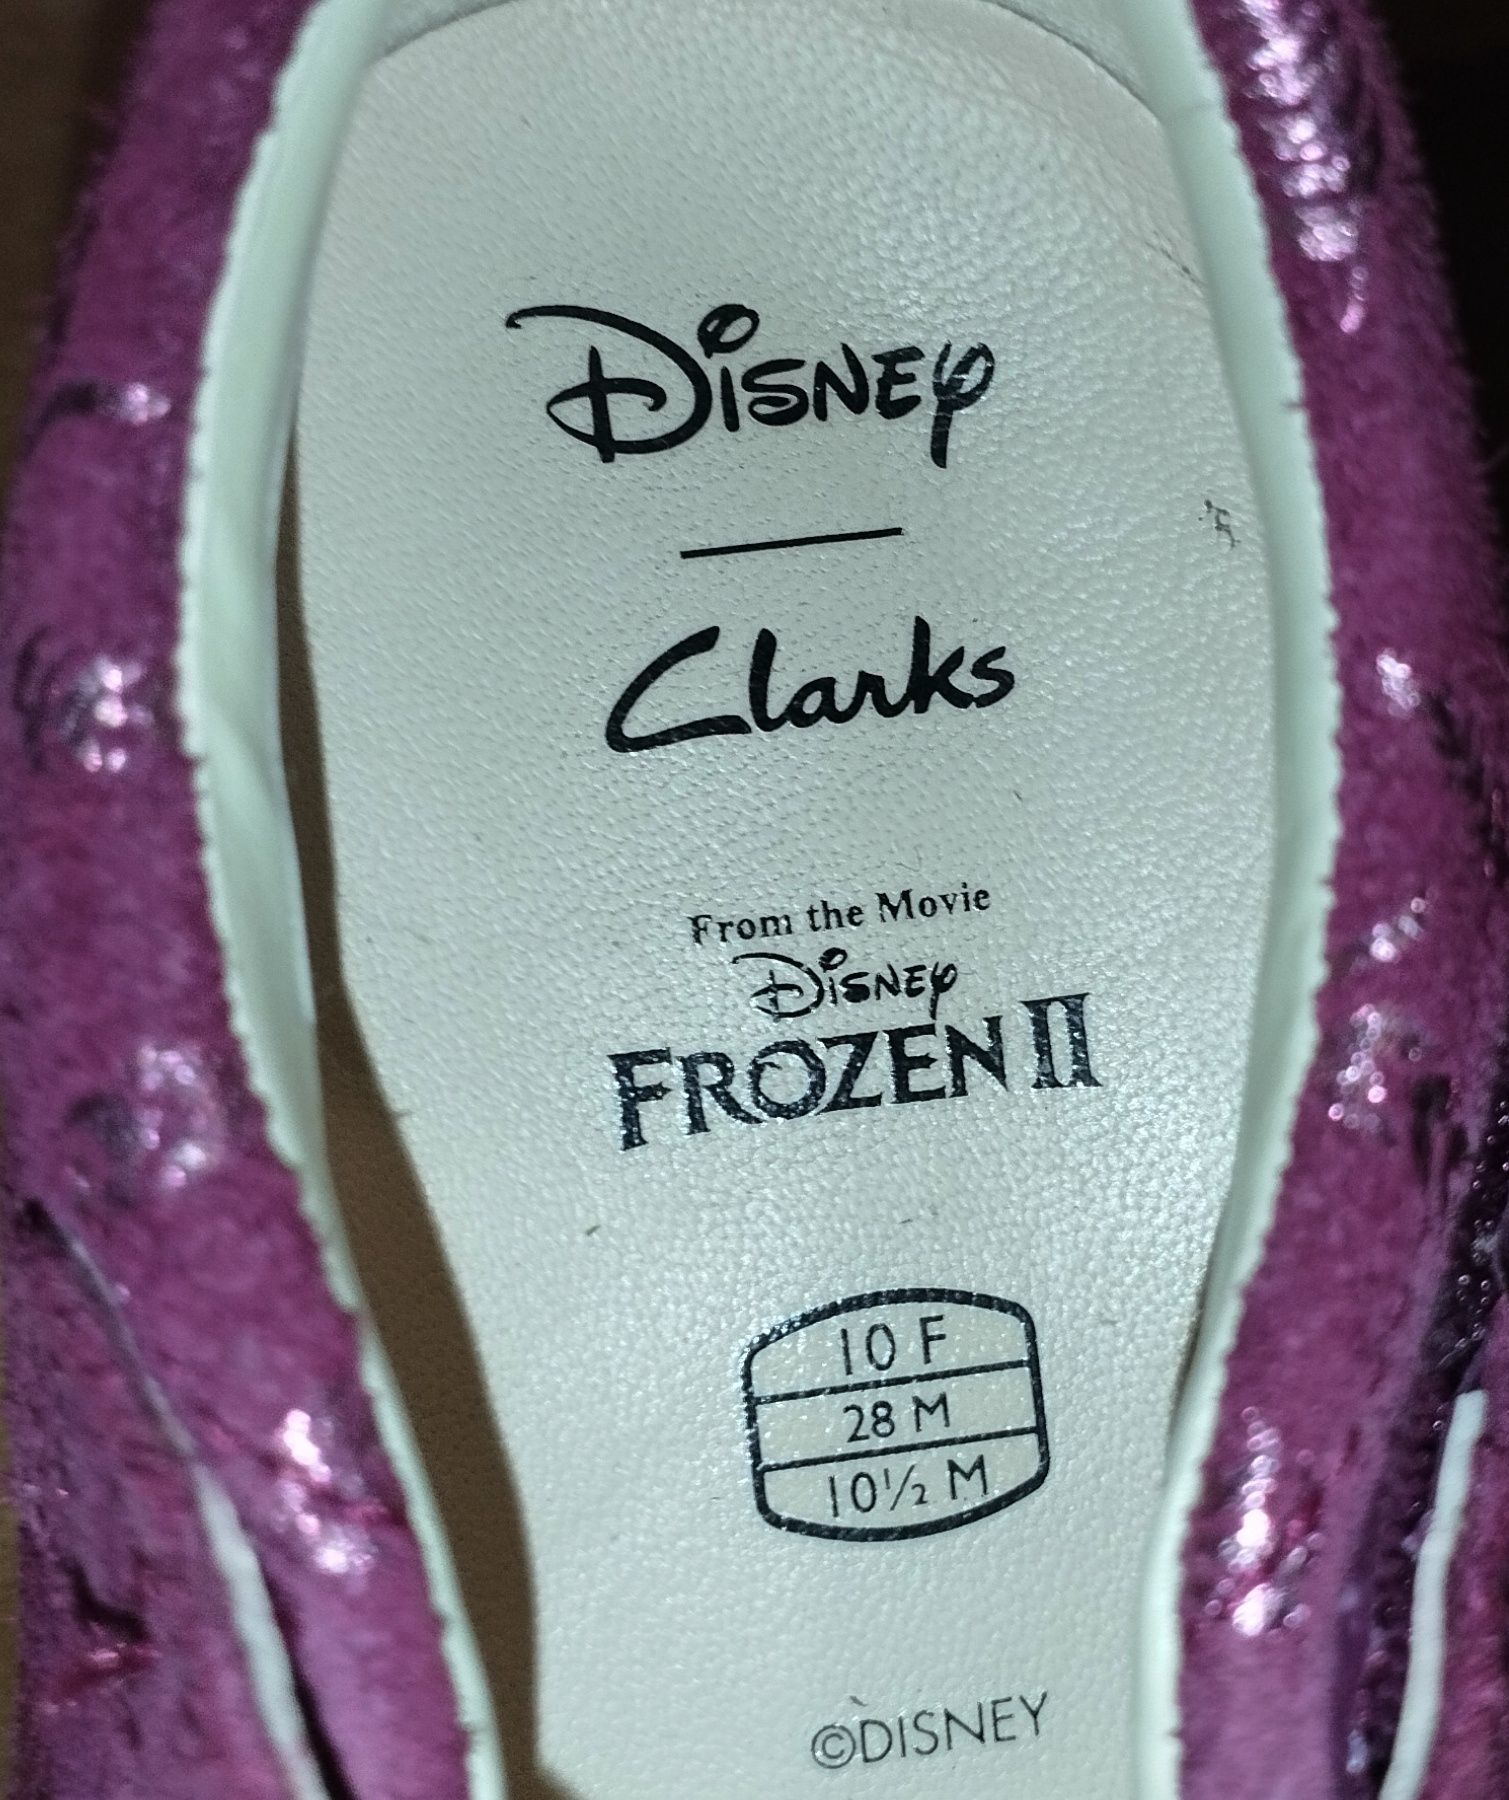 Clarks туфлі нові для дівчинки шкіряні Clarks Disney Frozen р.28